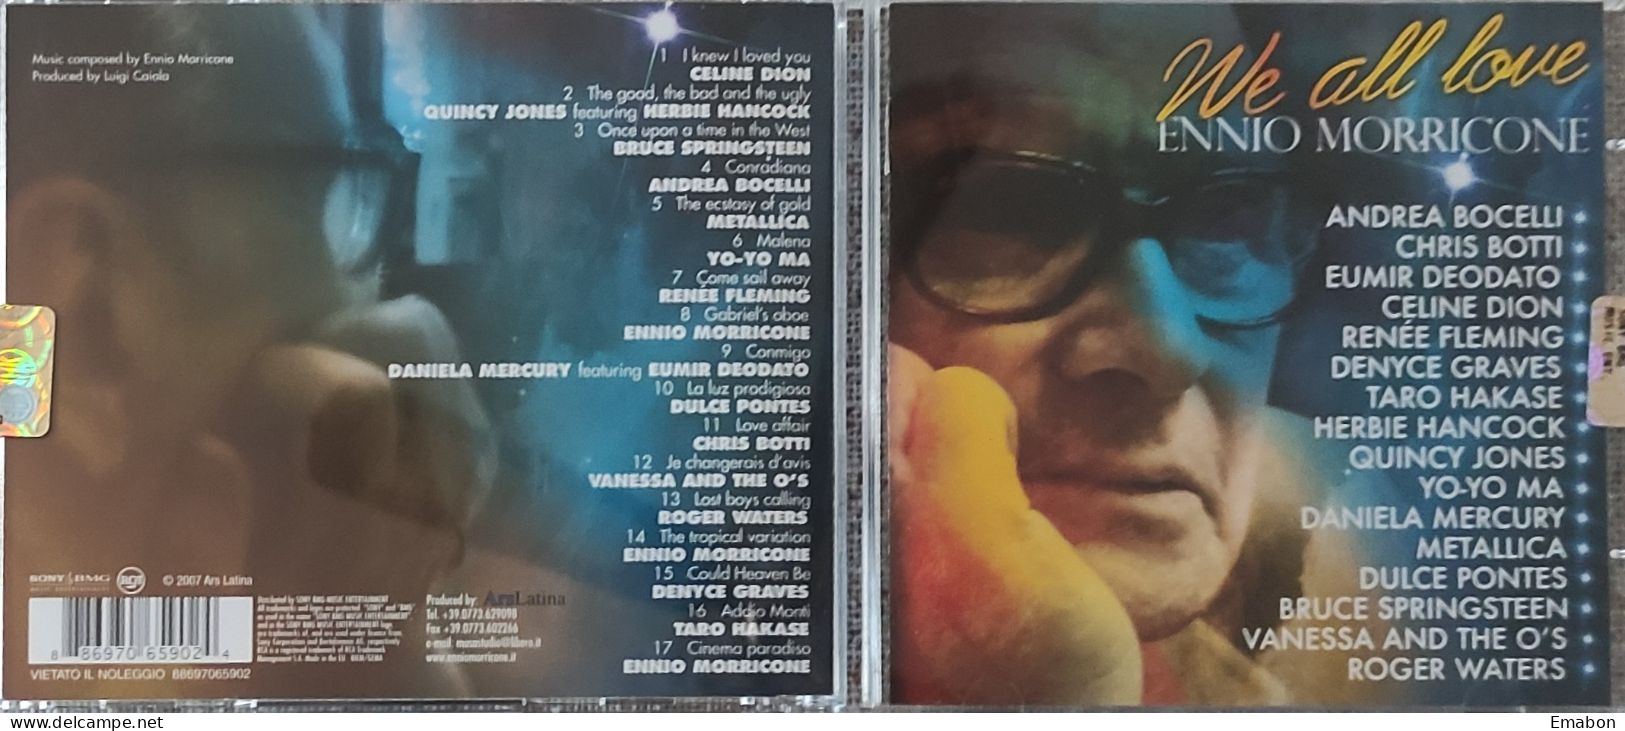 BORGATTA - FILM MUSIC  - Cd  ENNIO MORRICONE - WE ALL LOVE - ARS LATINA 2007 - USATO In Buono Stato - Soundtracks, Film Music